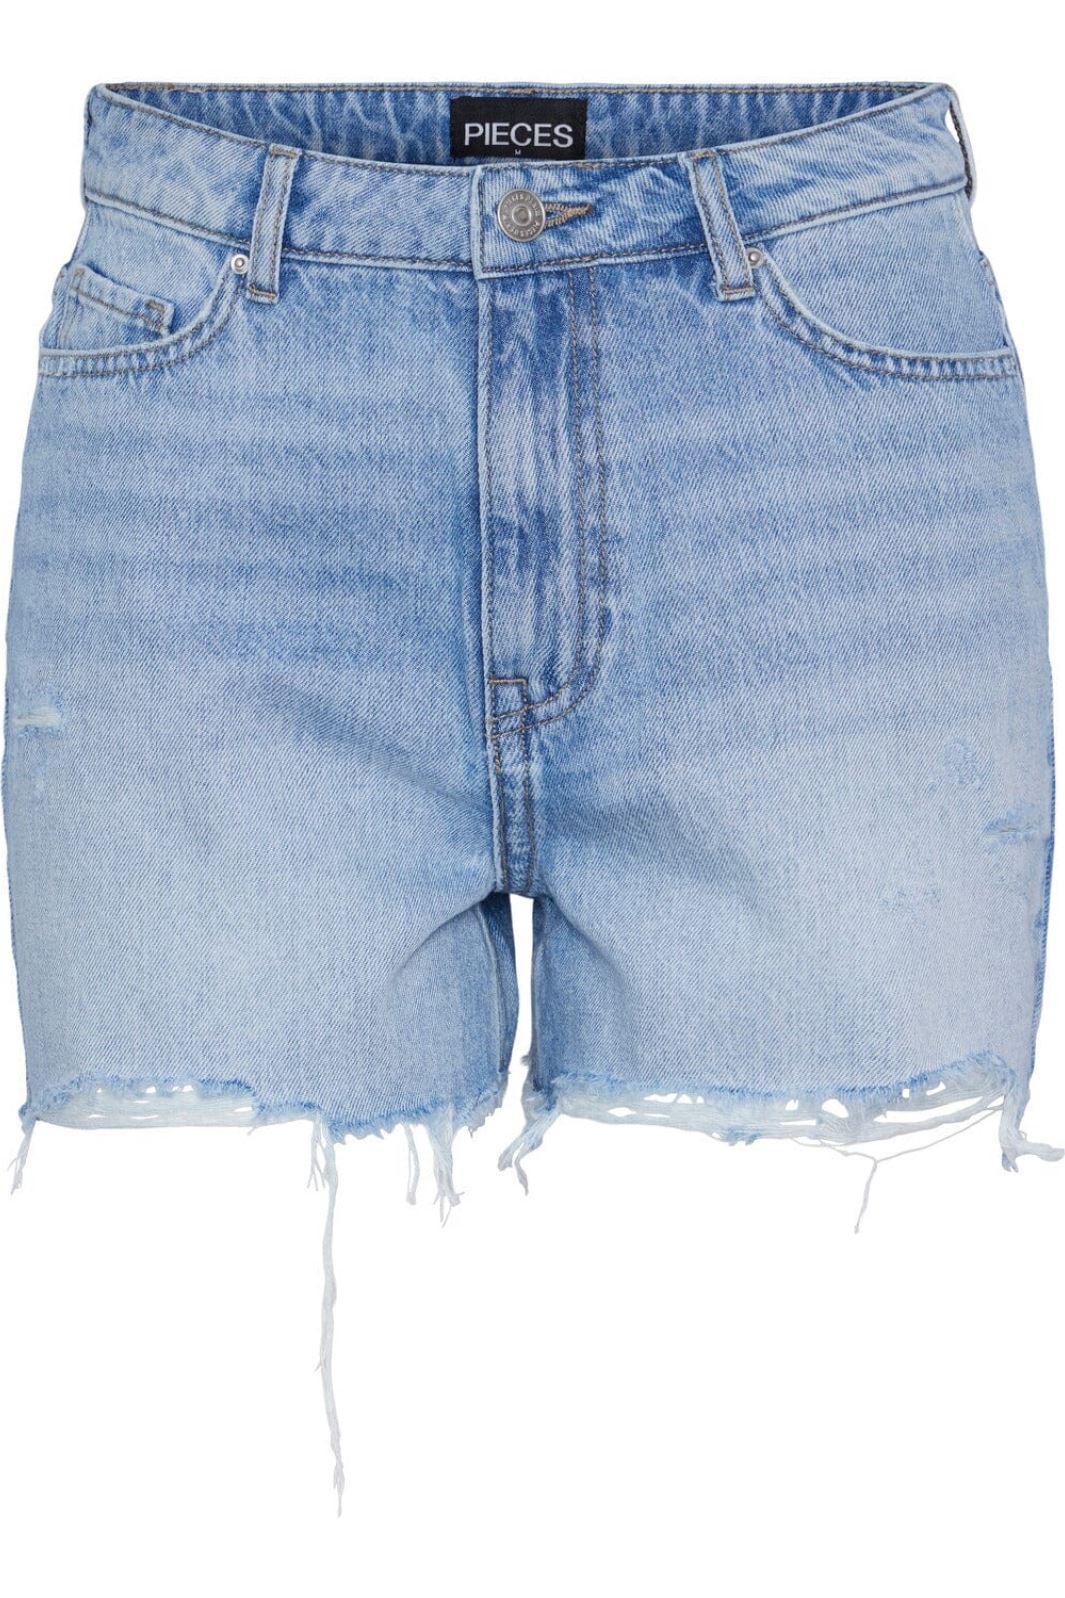 Pieces - Pcsummer Dest Lb Shorts - 4405831 Light Blue Denim Shorts 